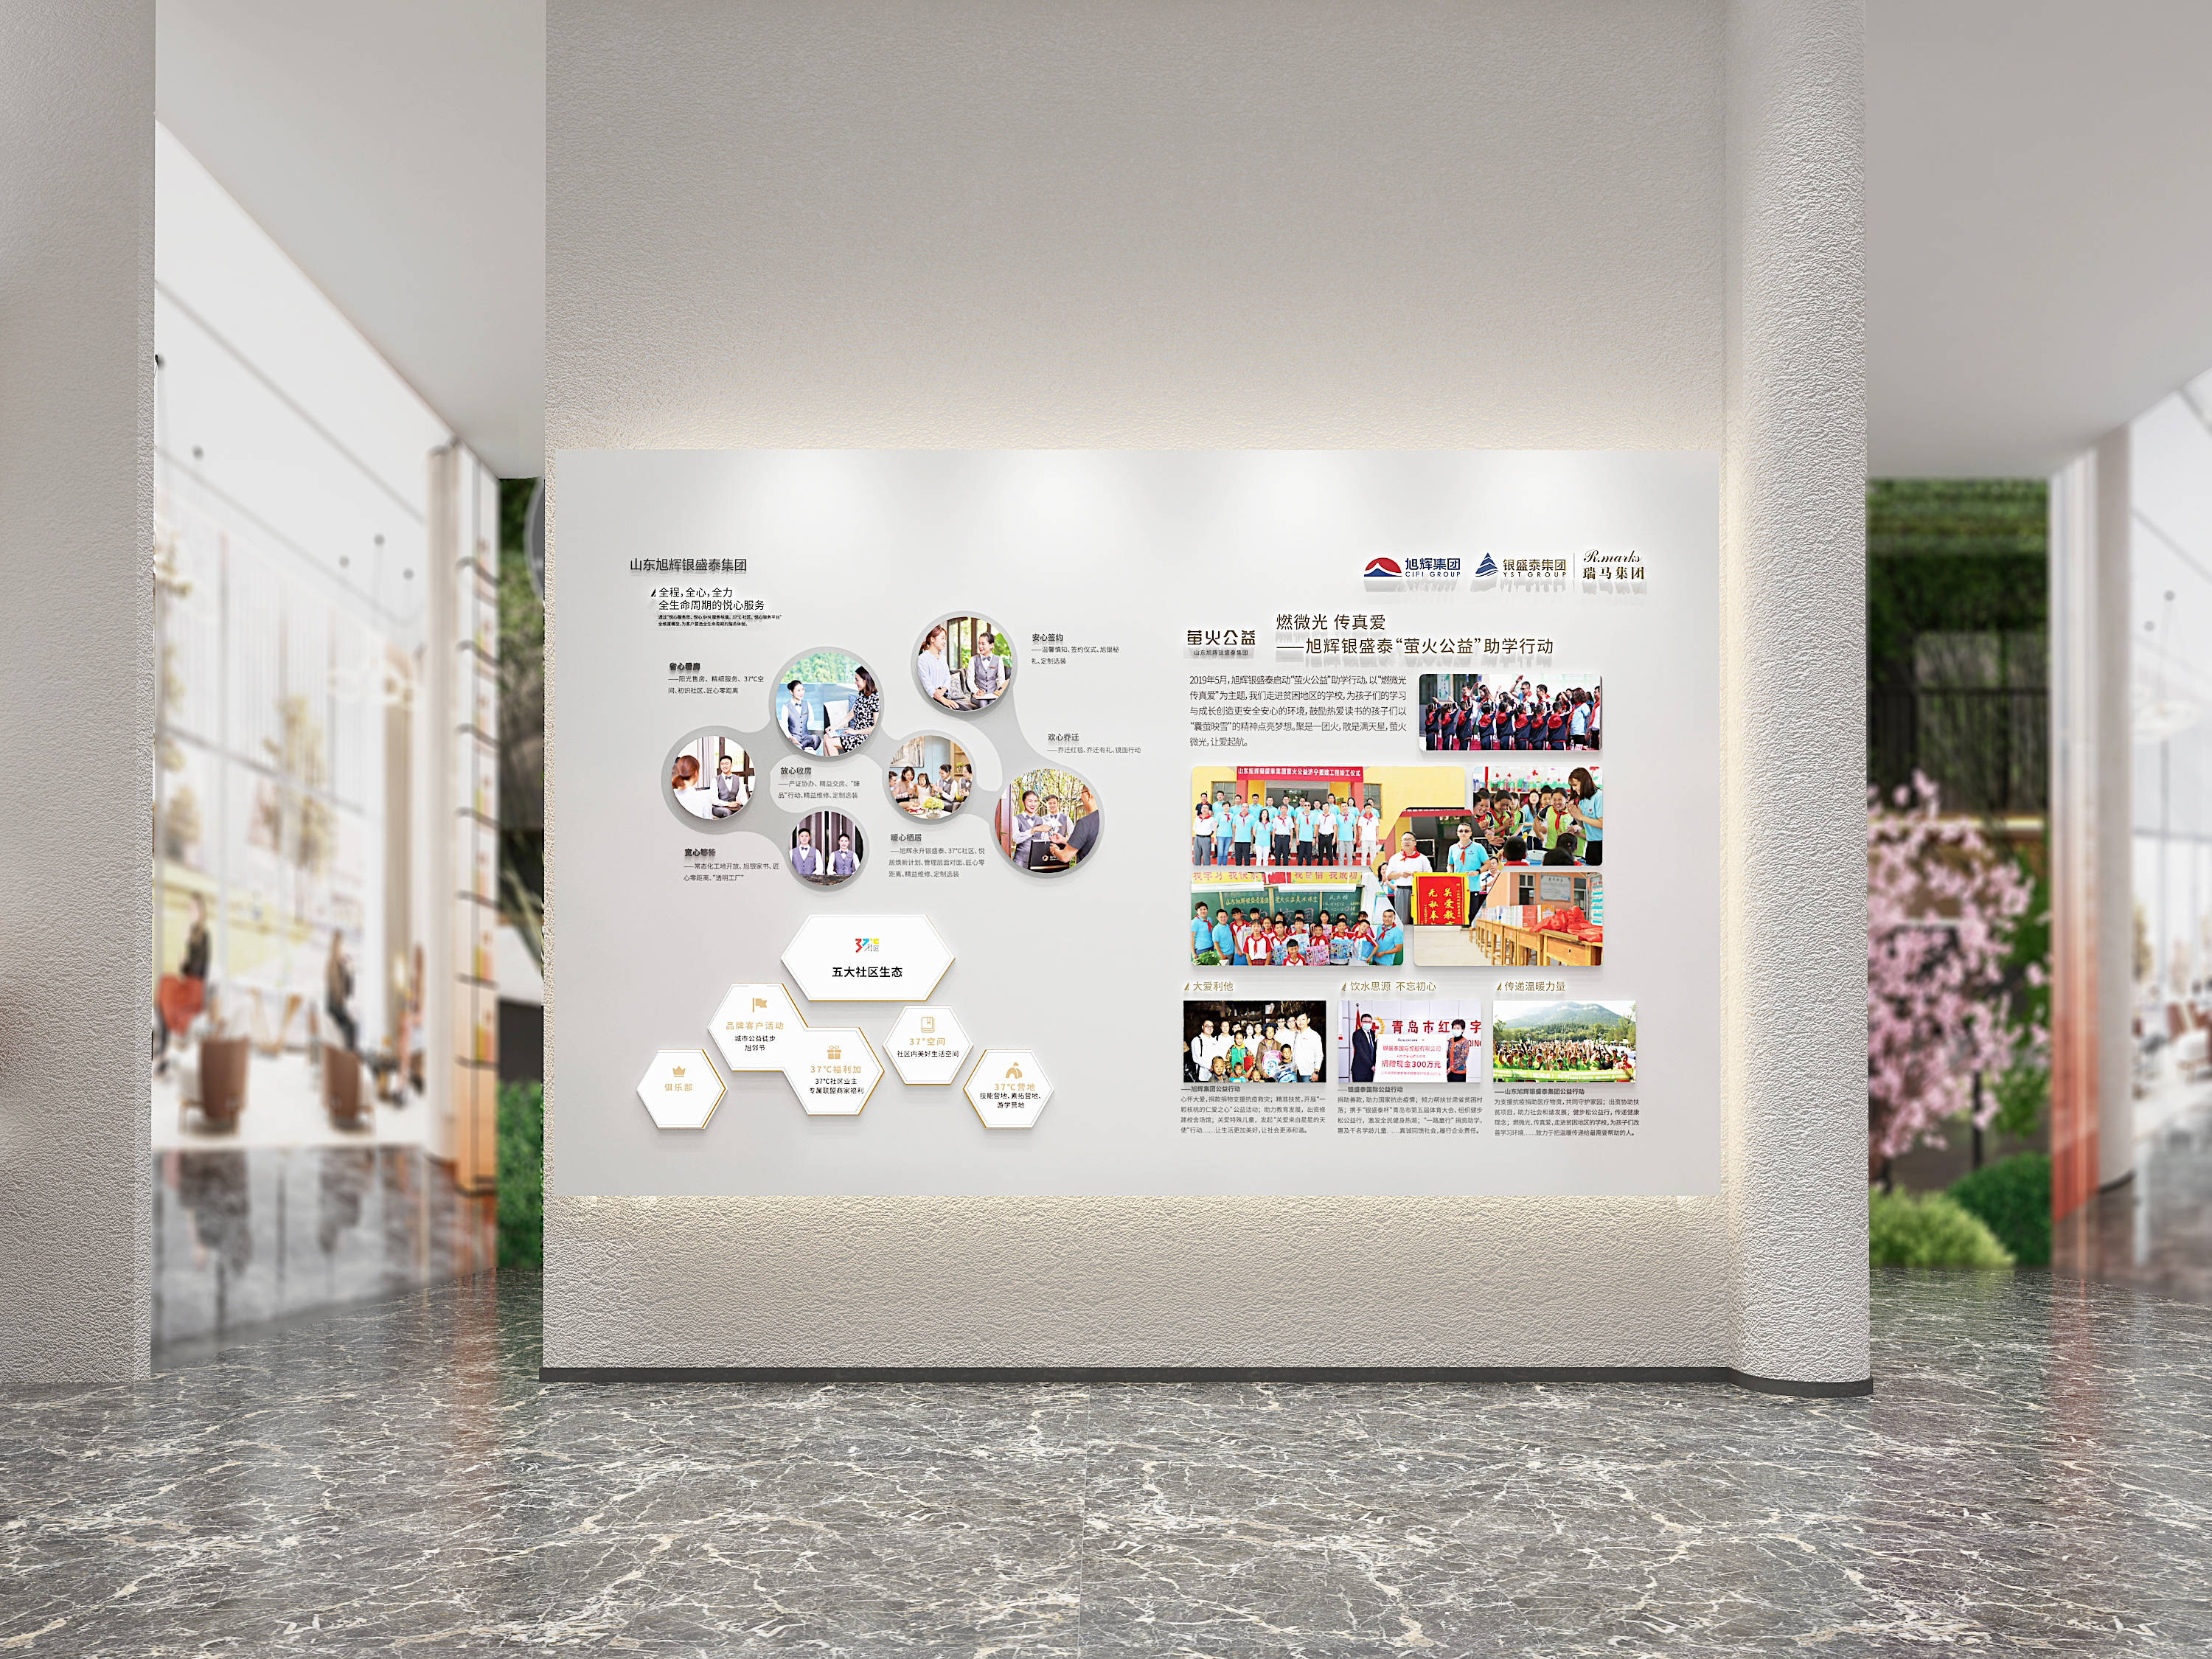 东莞企业文化展厅展馆策划设计如何体现品牌文化东莞有了策划